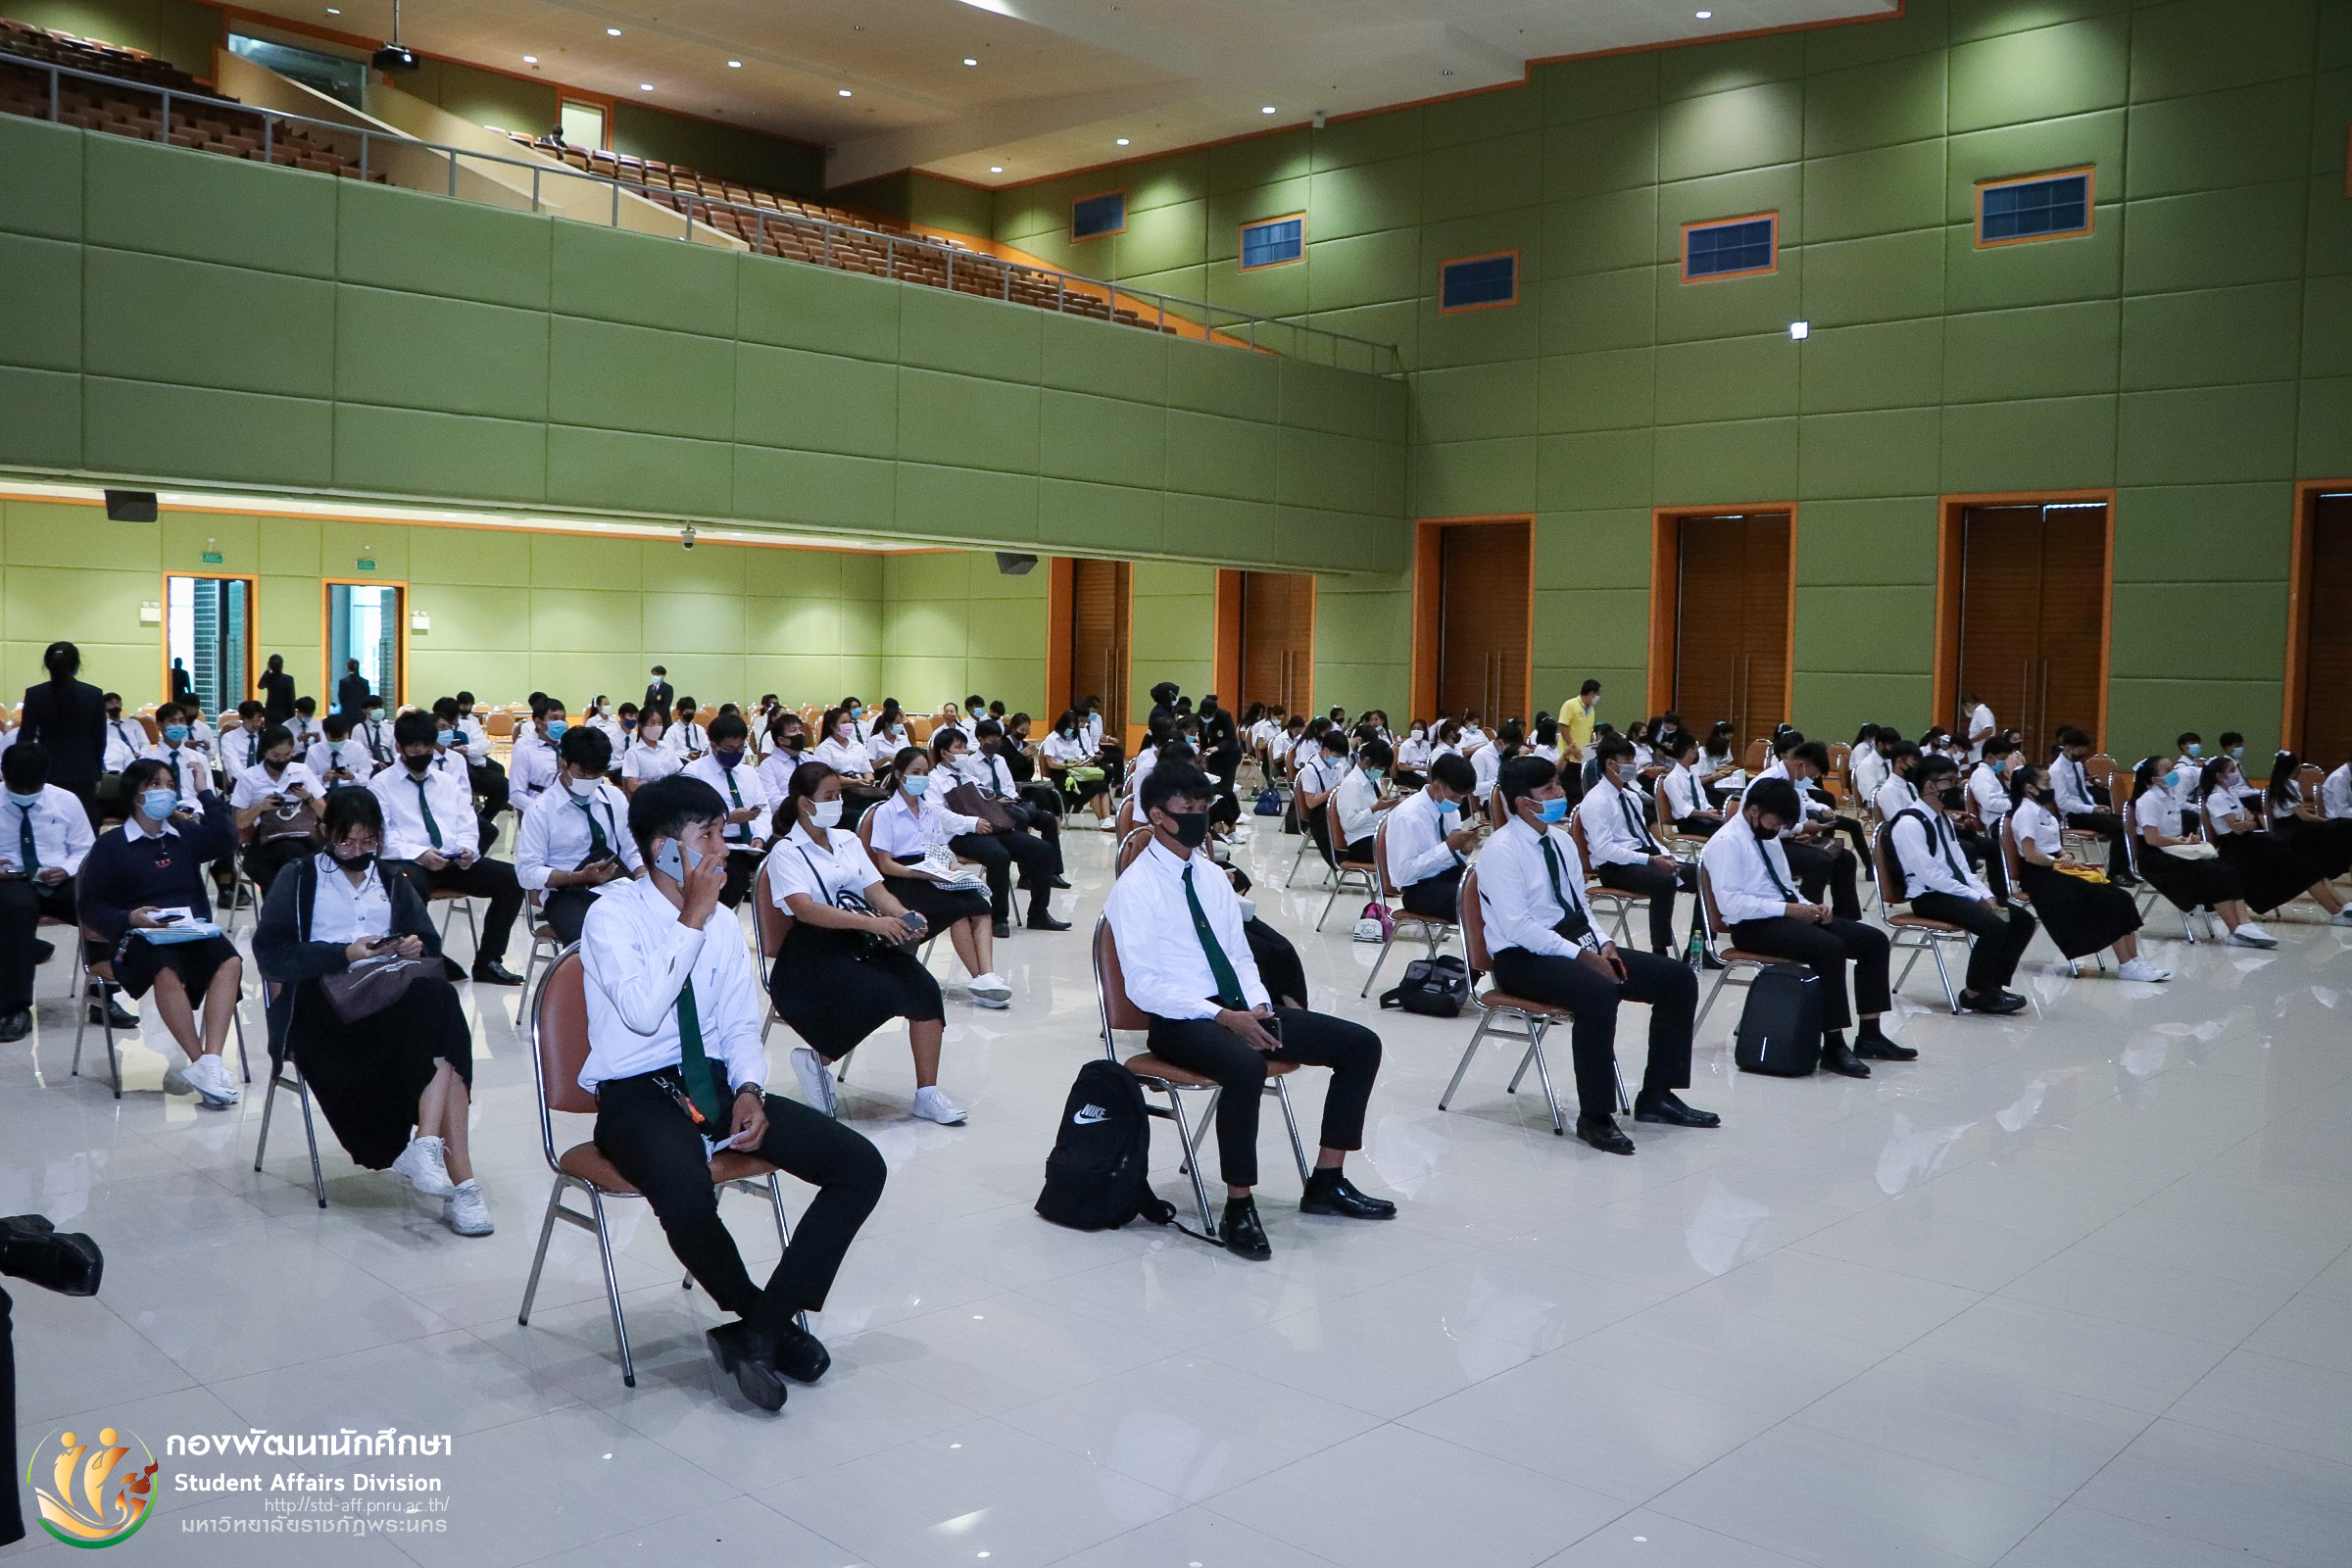 29 กรกฎาคม 2563 กองพัฒนานักศึกษา มหาวิทยาลัยราชภัฏพระนคร จัดให้มีการจัดกิจกรรมเพาะกล้ากาซะลอง 63 รุ่นที่ 4 ประจำปีการศึกษา 2563 ณ หอประชุมภัทรมหาราช